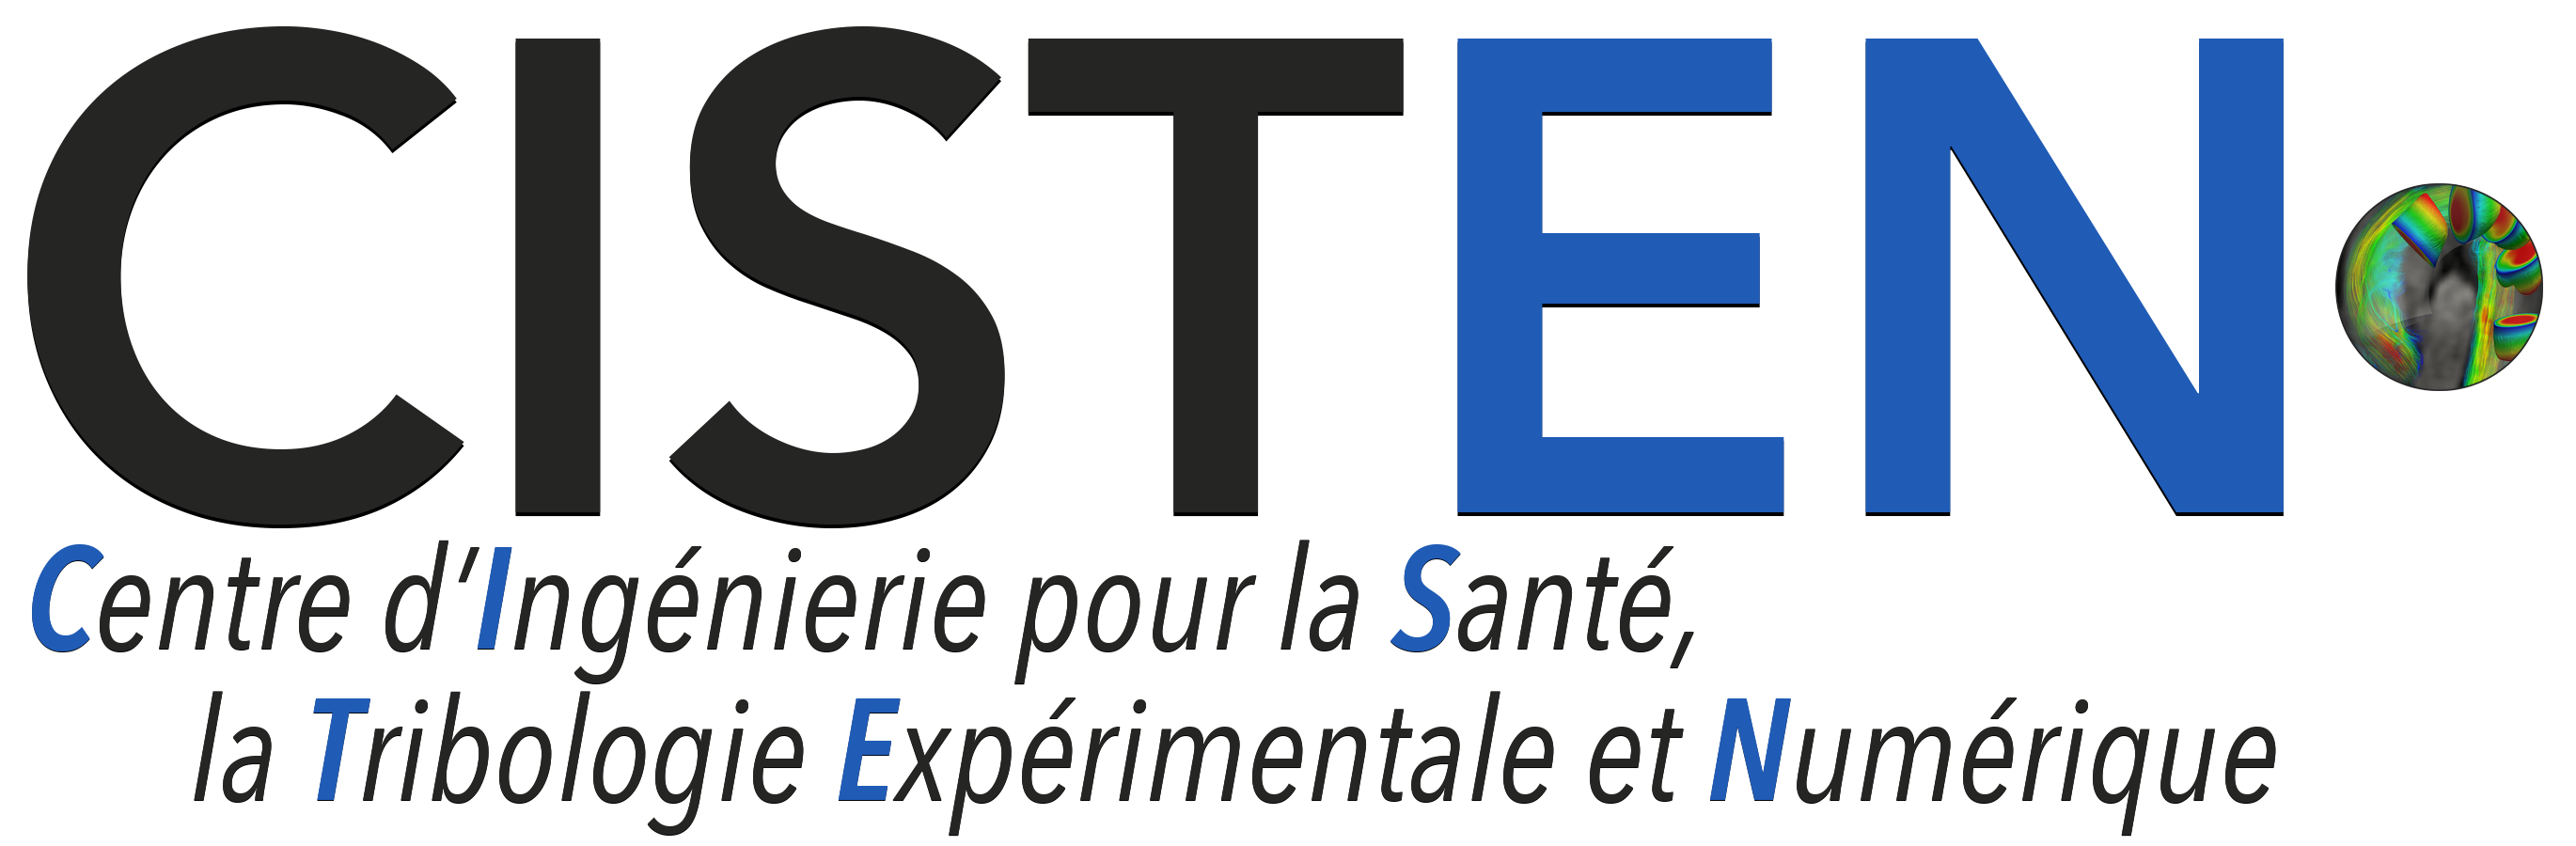 Logo CISTEN